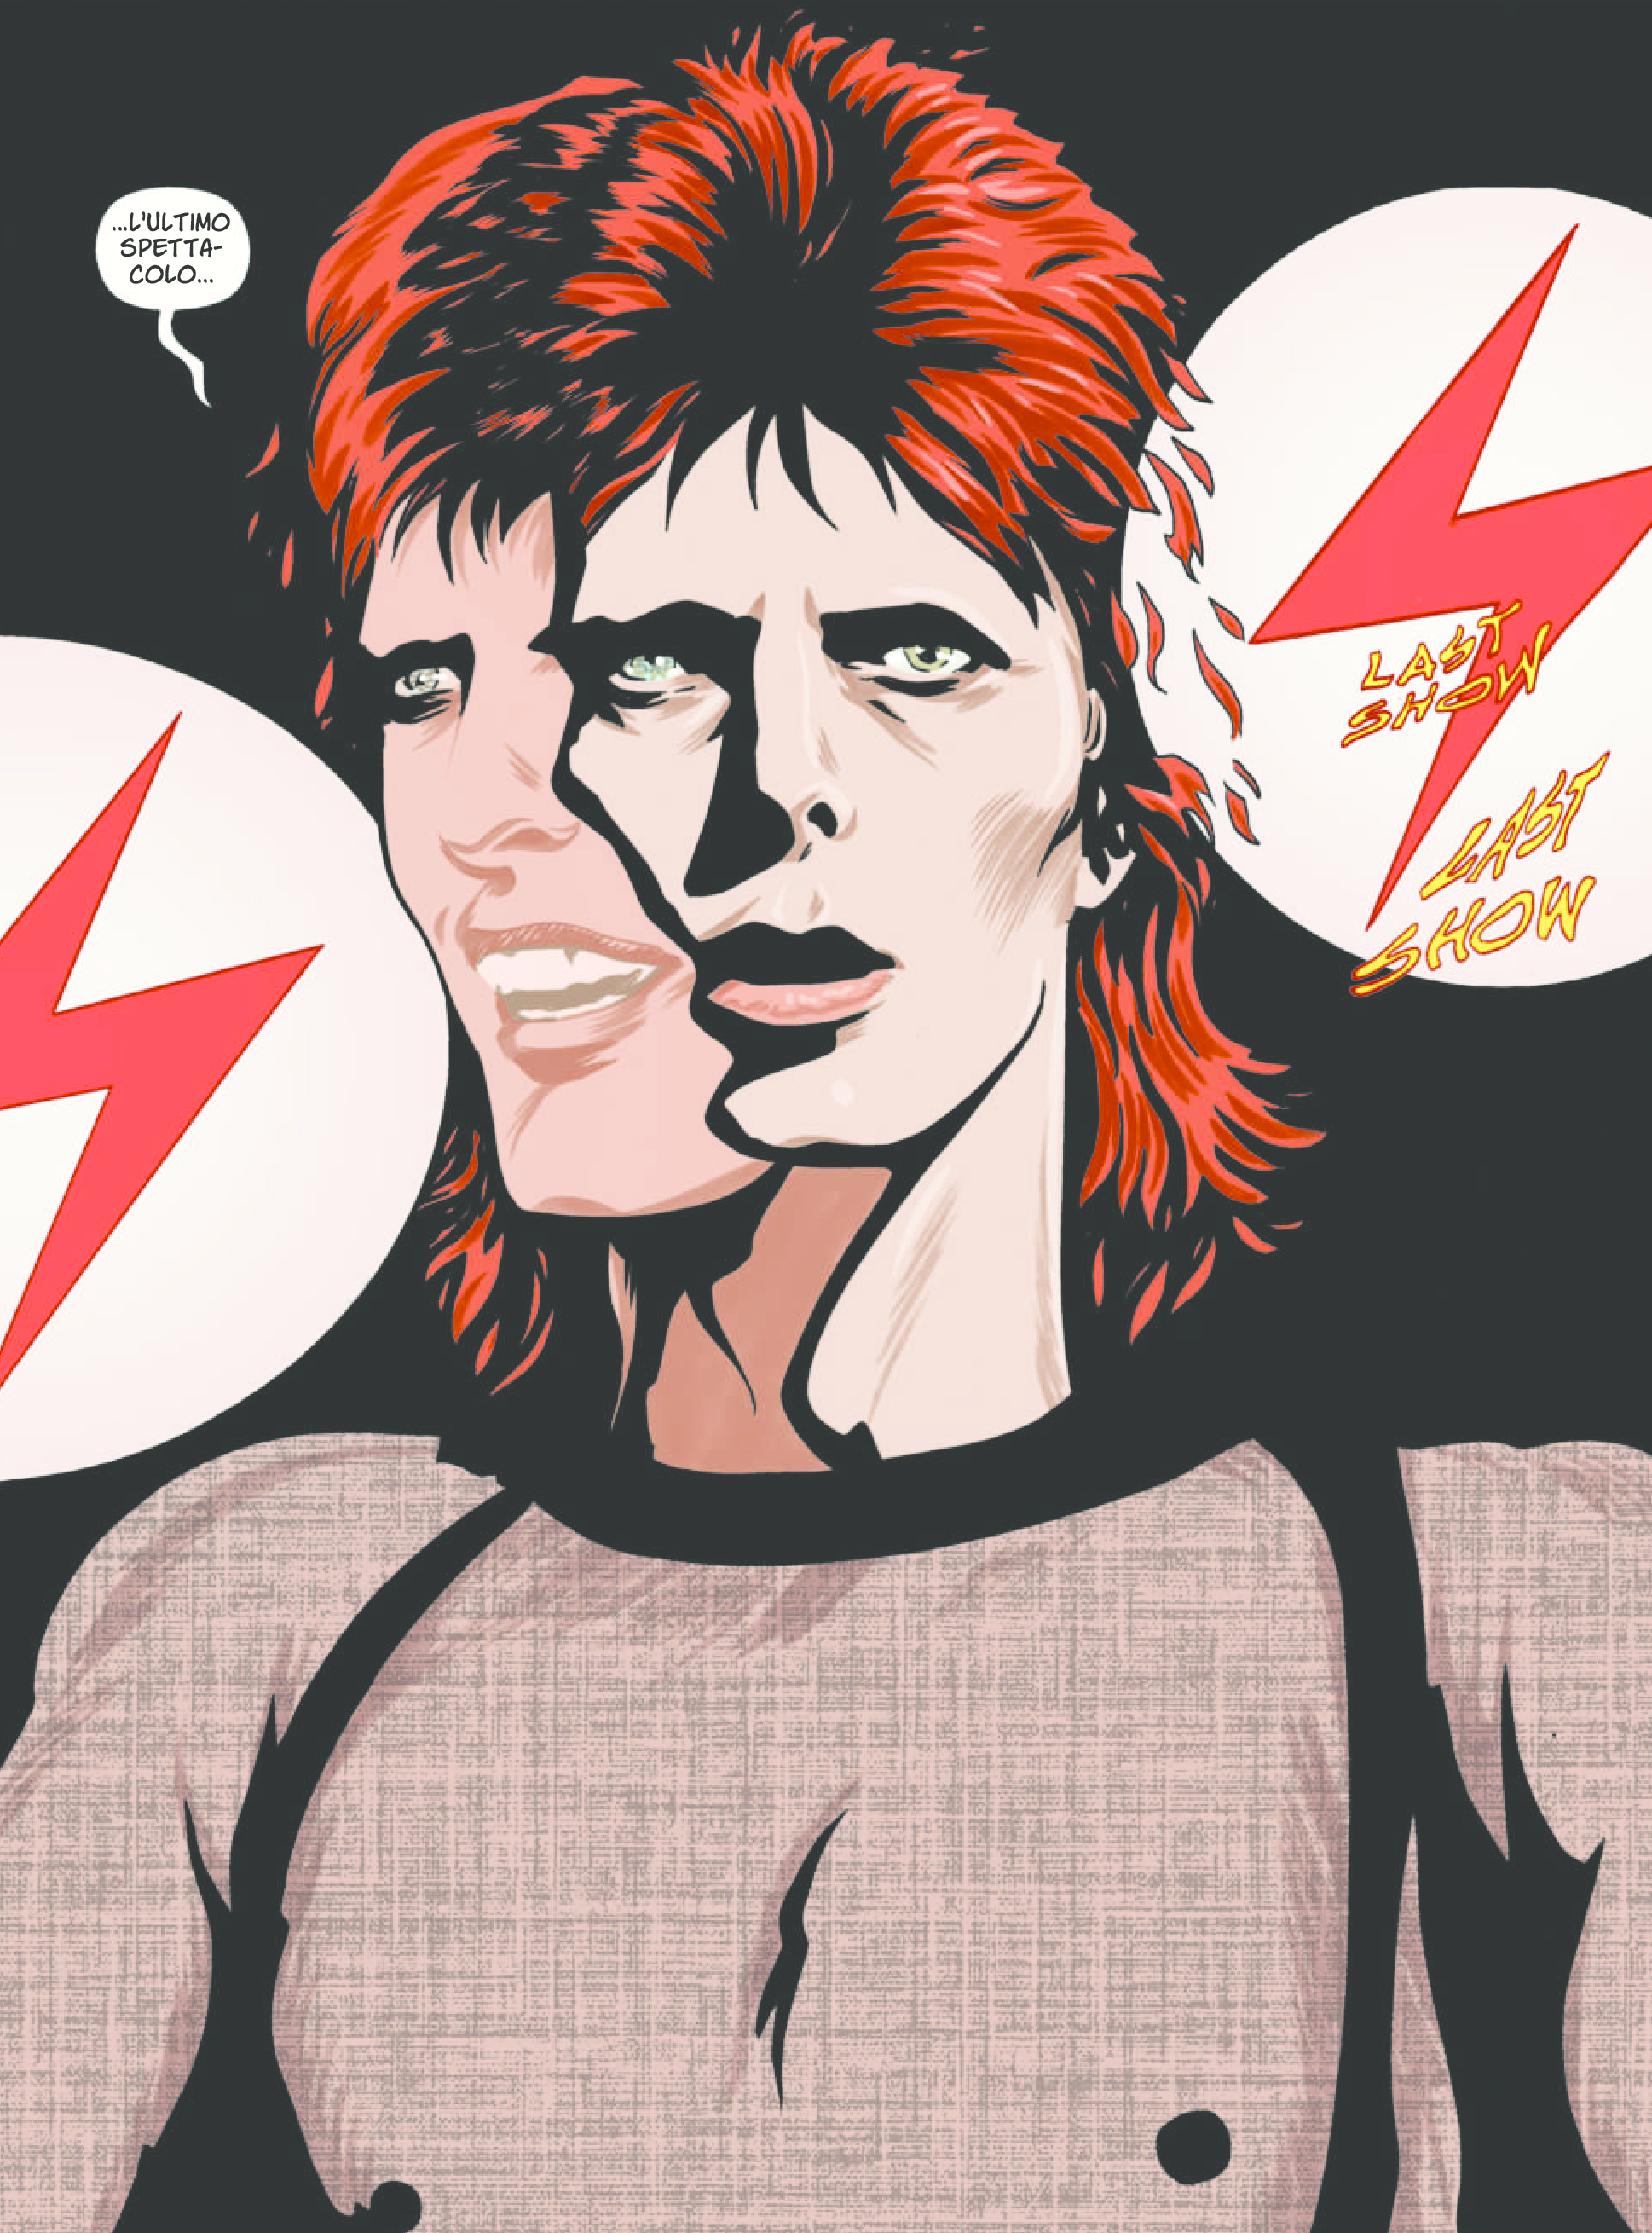 La vita di David Bowie diventa un fumetto: Stardust, Rayguns & Moonage Daydreams